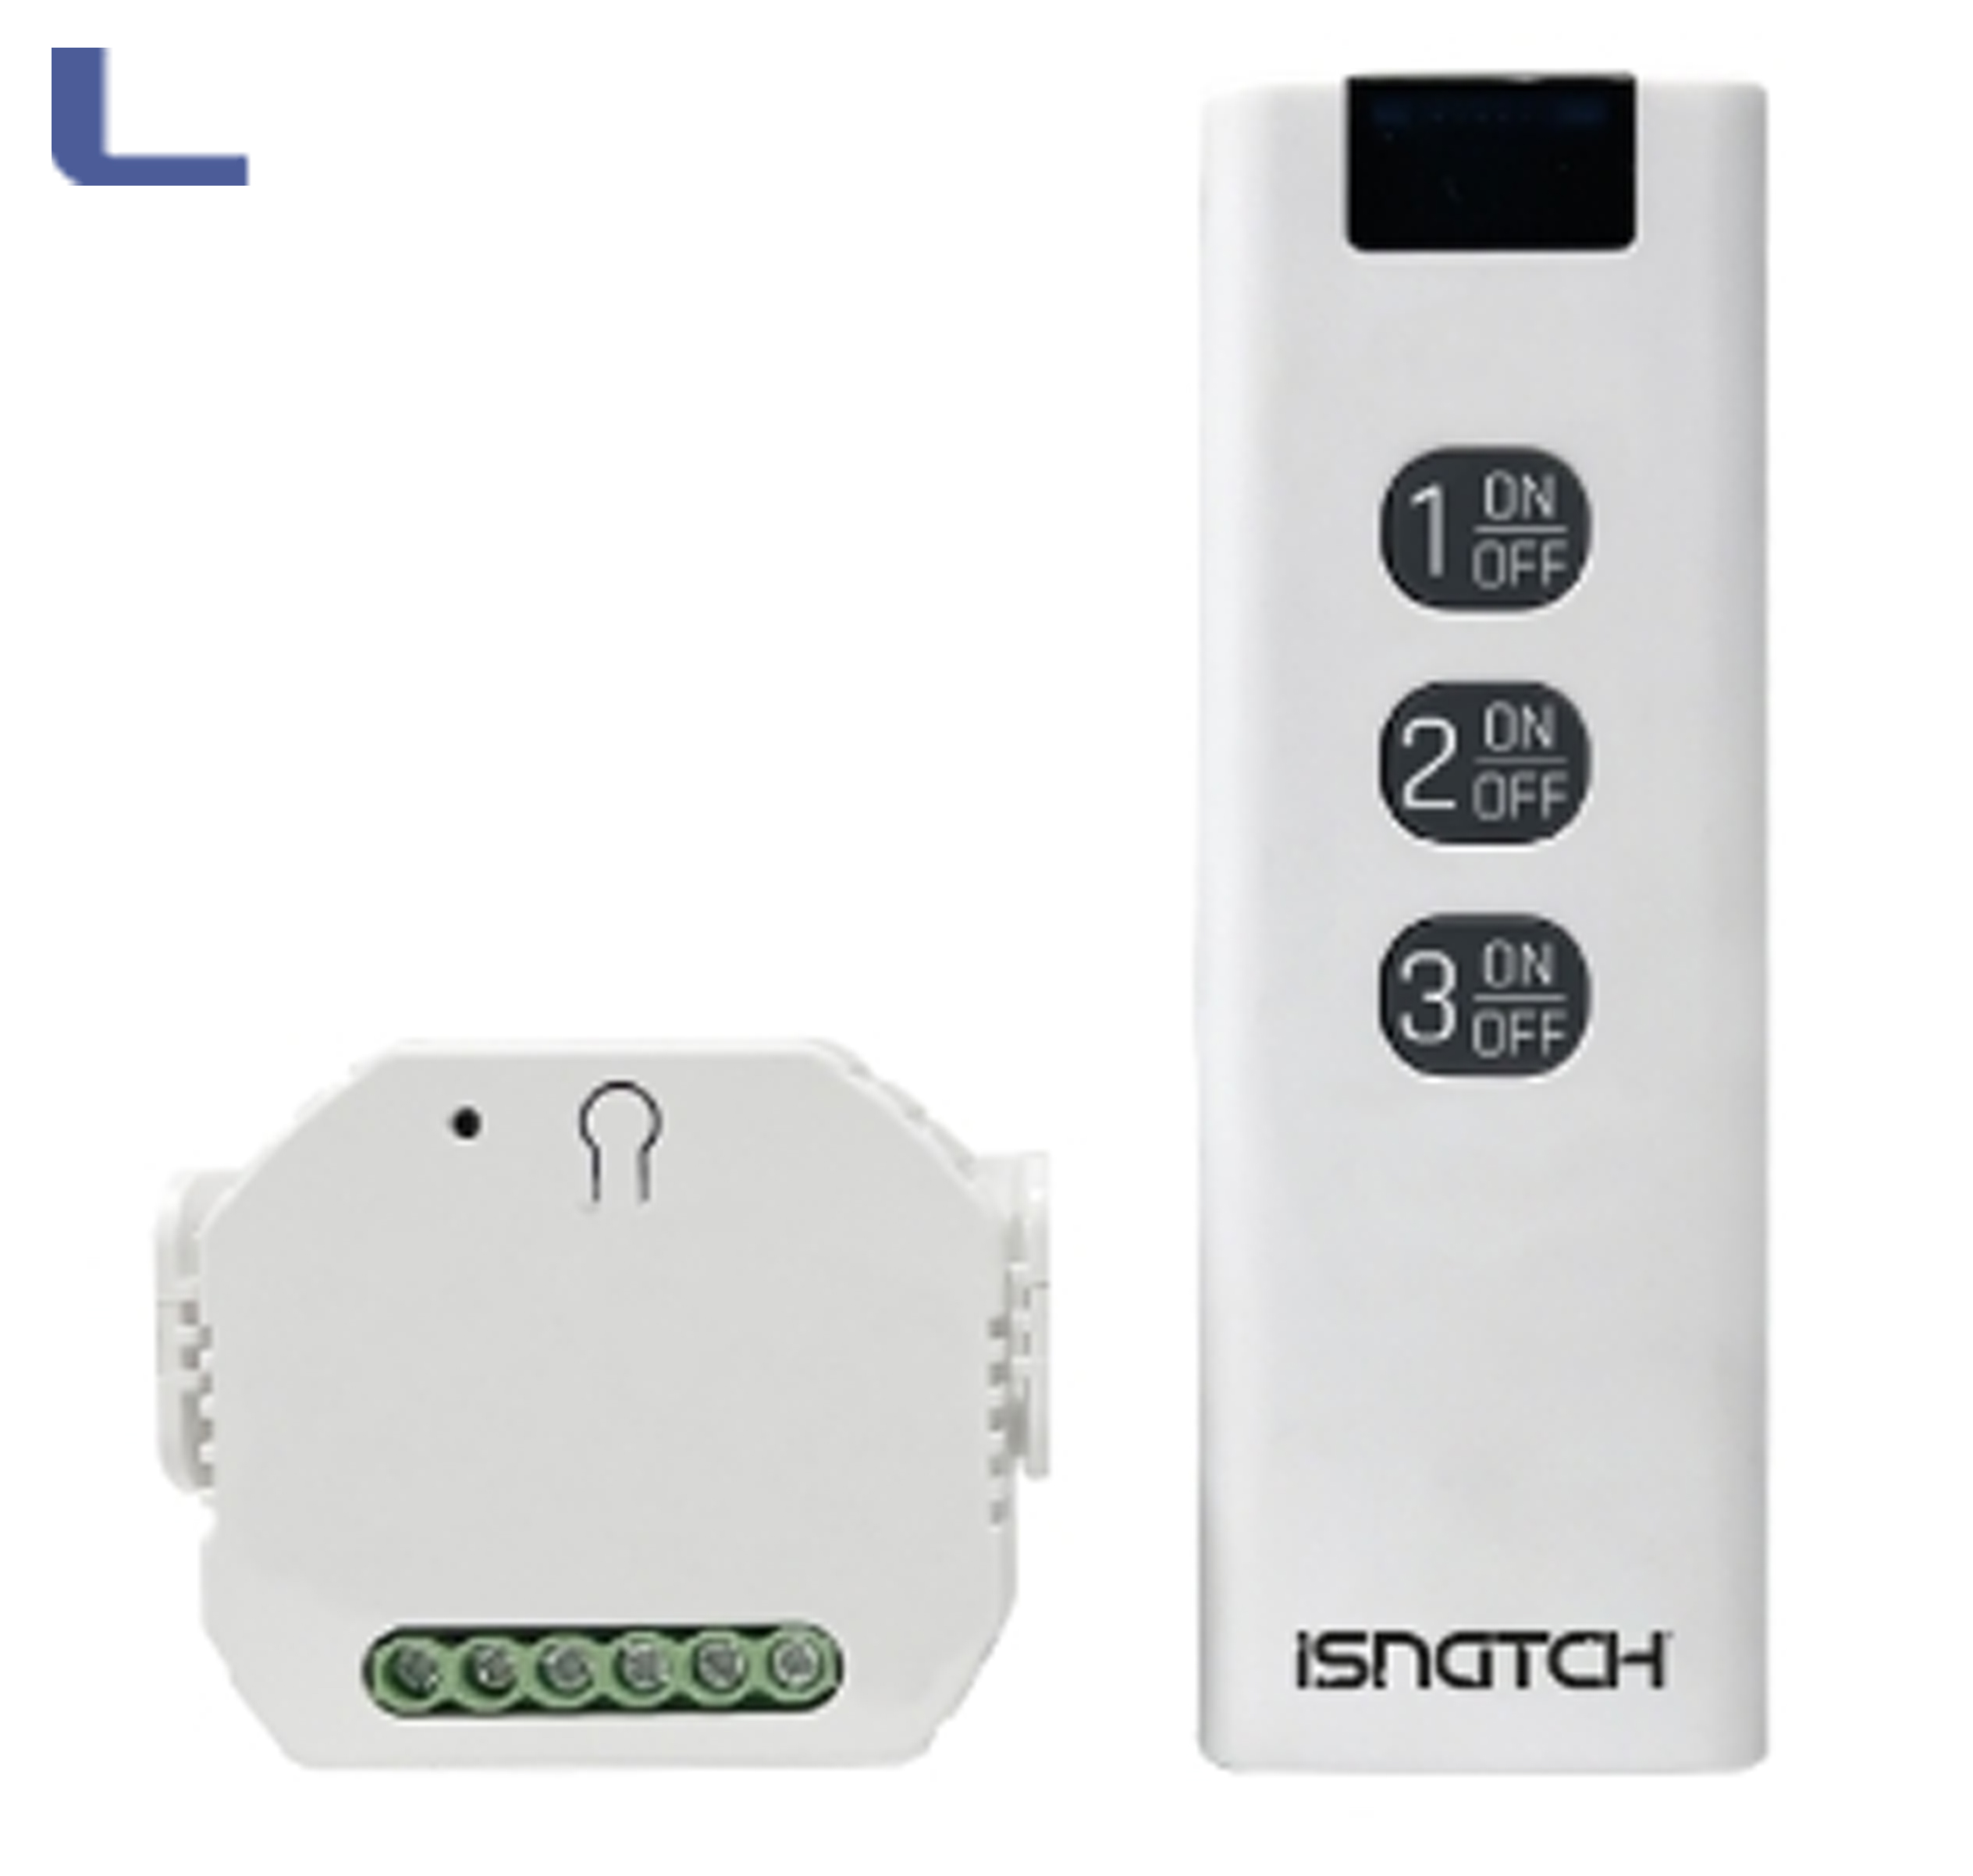 hey switch+ modulo smart wifi per illuminaz con telecomando *431 -  Elettrico Accessori - Linker Accessories - Distribuzione ingrosso toner  cartucce informatica hardware misterbianco catania sicilia